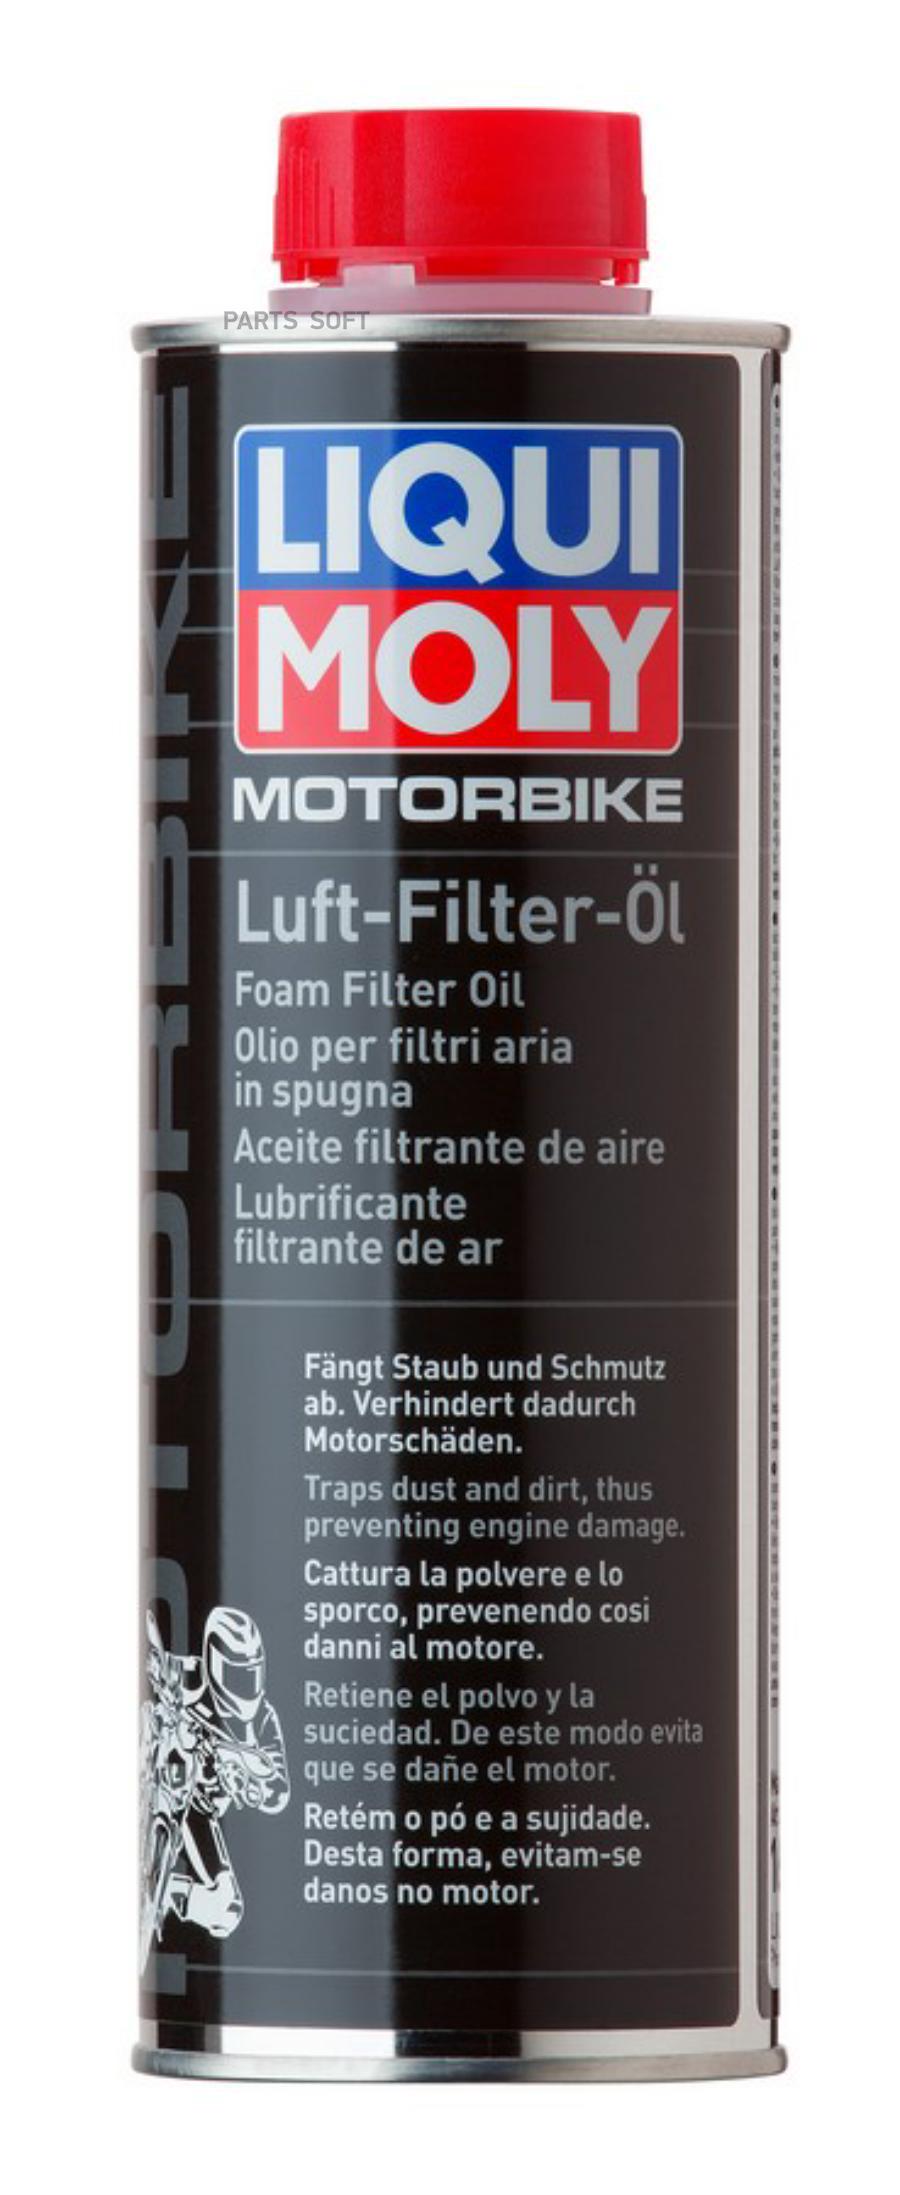 Средство д/пропитки фильтров Motorbike Luft-Filter-Oil (0,5л)